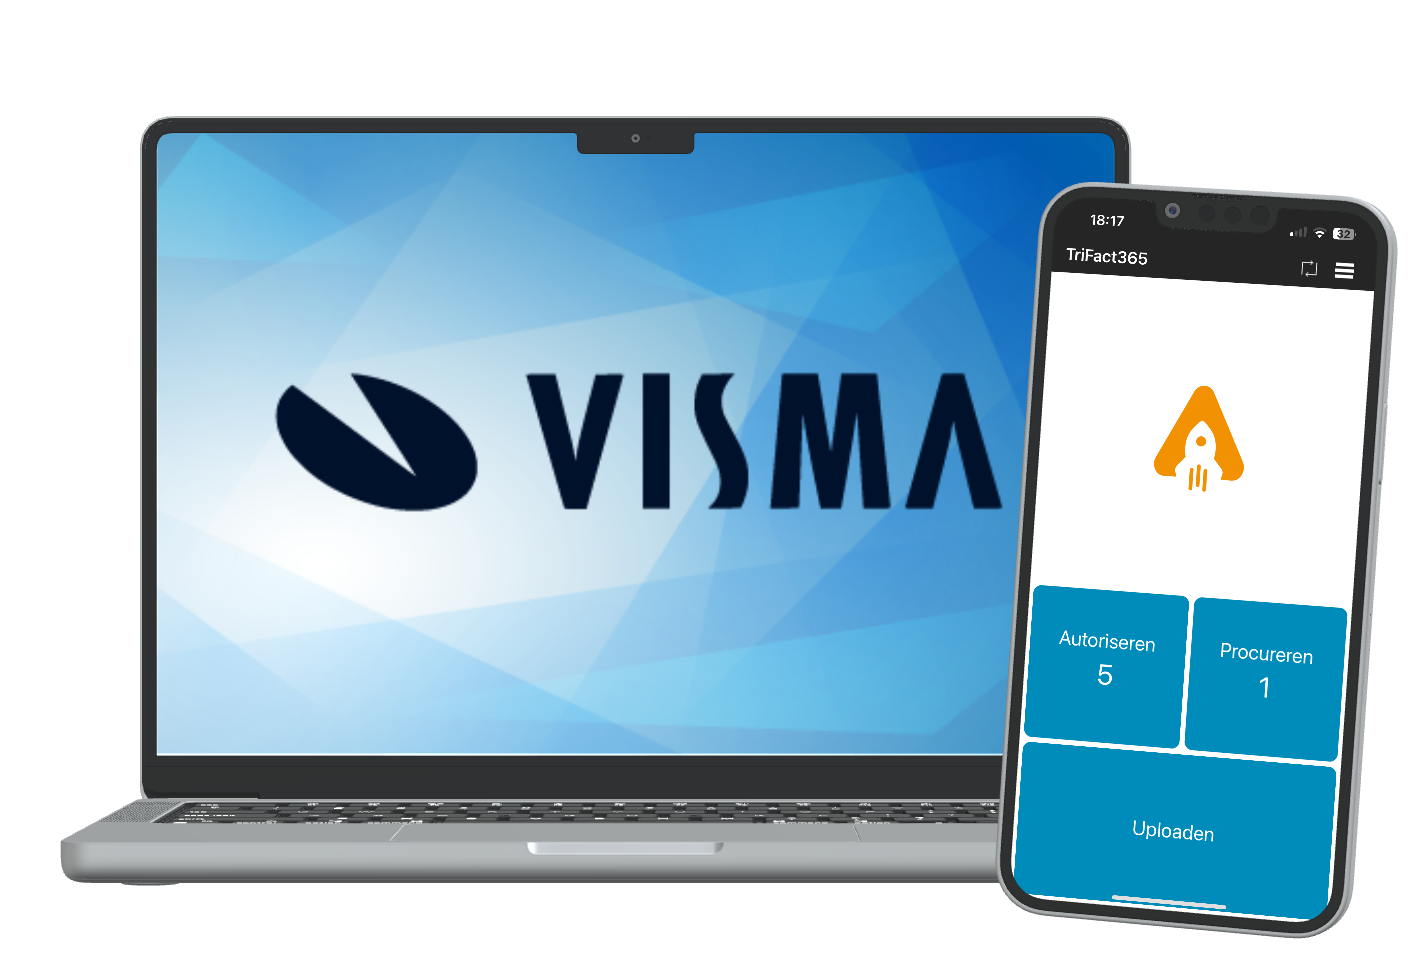 Laptop met Visma logo met daarnaast een smartphone met de TriFact365 app